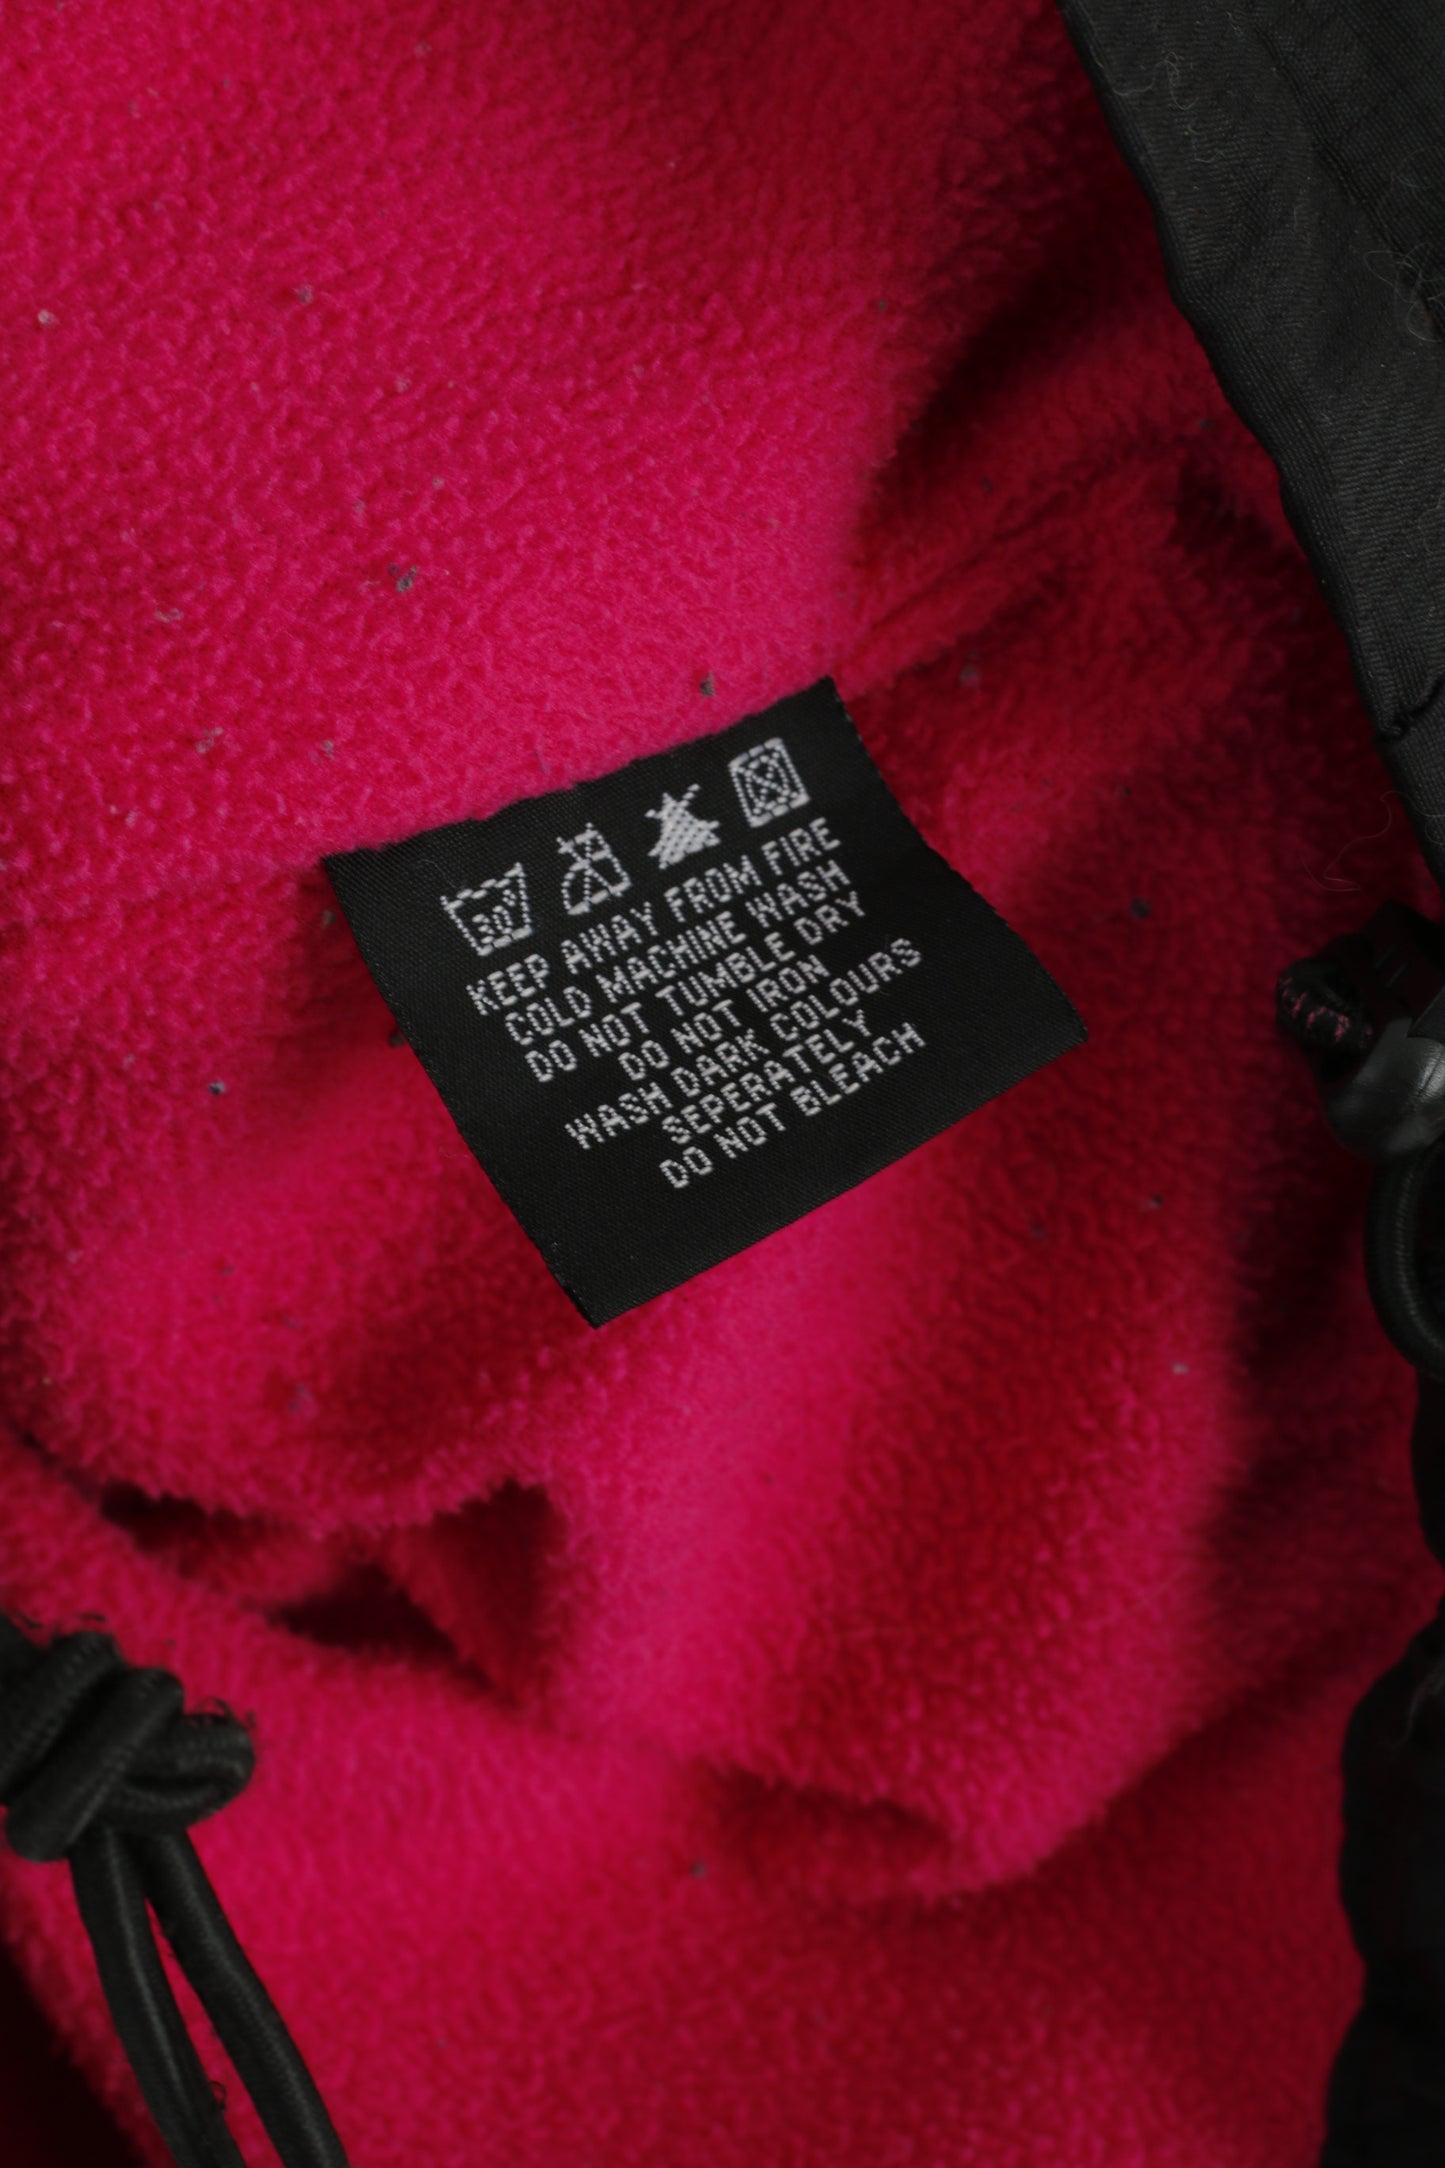 Superdry Women S Jacket Black Hooded Nylon Fleece Inside 3 Zipper Top